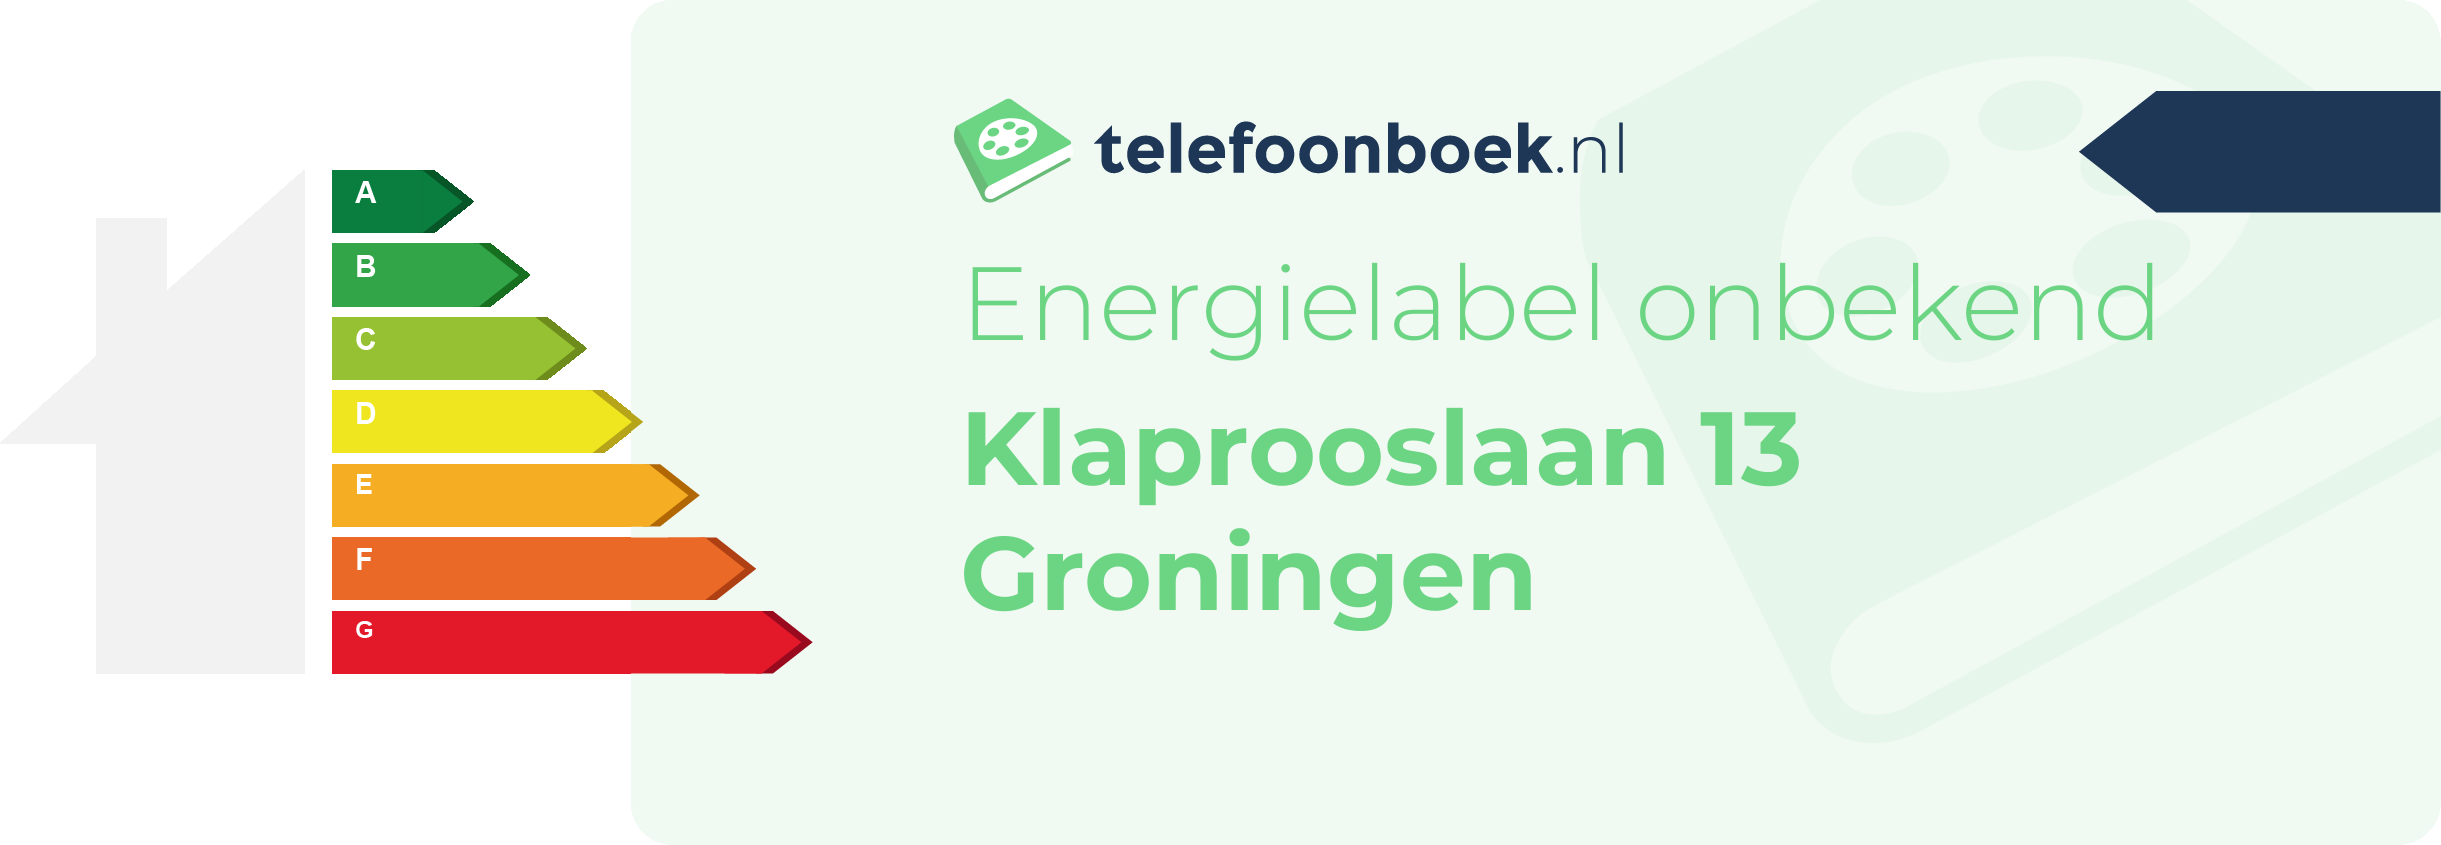 Energielabel Klaprooslaan 13 Groningen